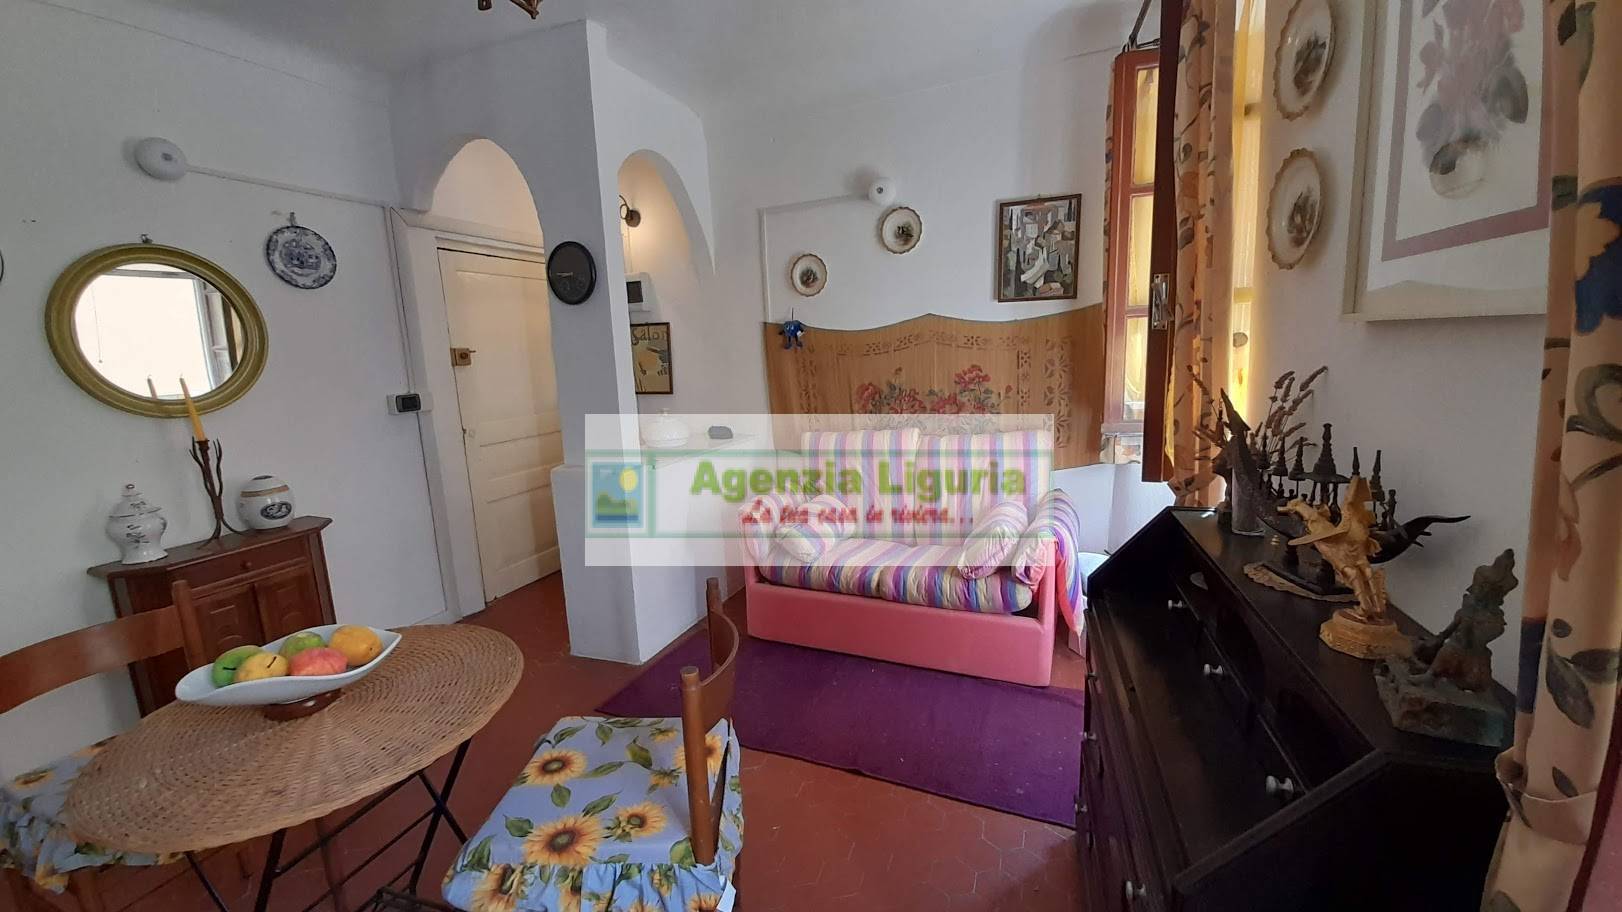 Appartamento in vendita a Perinaldo, 2 locali, prezzo € 38.000 | PortaleAgenzieImmobiliari.it